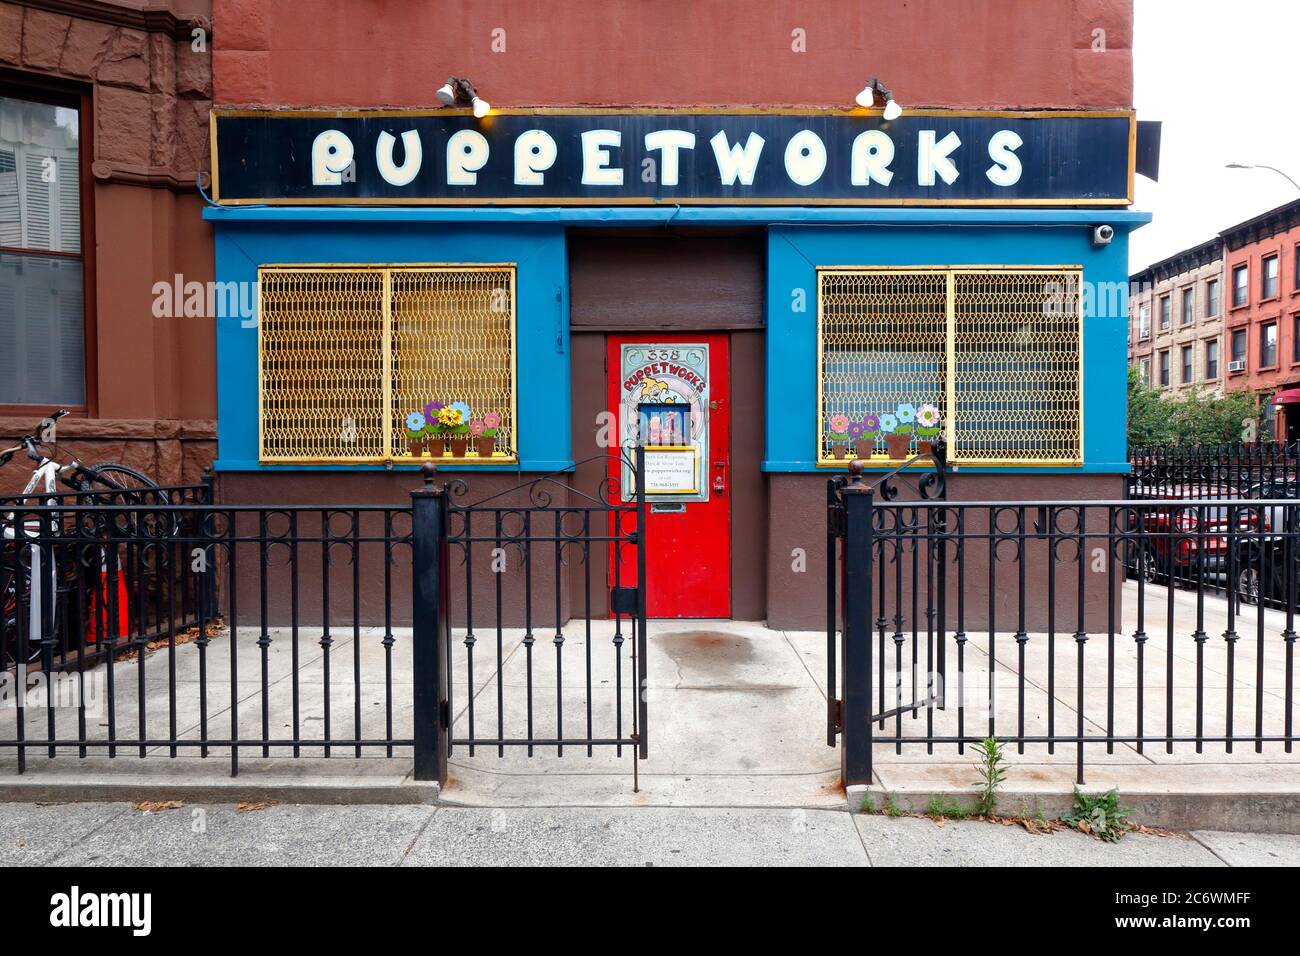 Puppet Works, 338 6. Ave, Brooklyn, New York, NYC Schaufensterfoto eines Puppentheaters, Spielzeugtheater im Park Slope-Viertel. Stockfoto